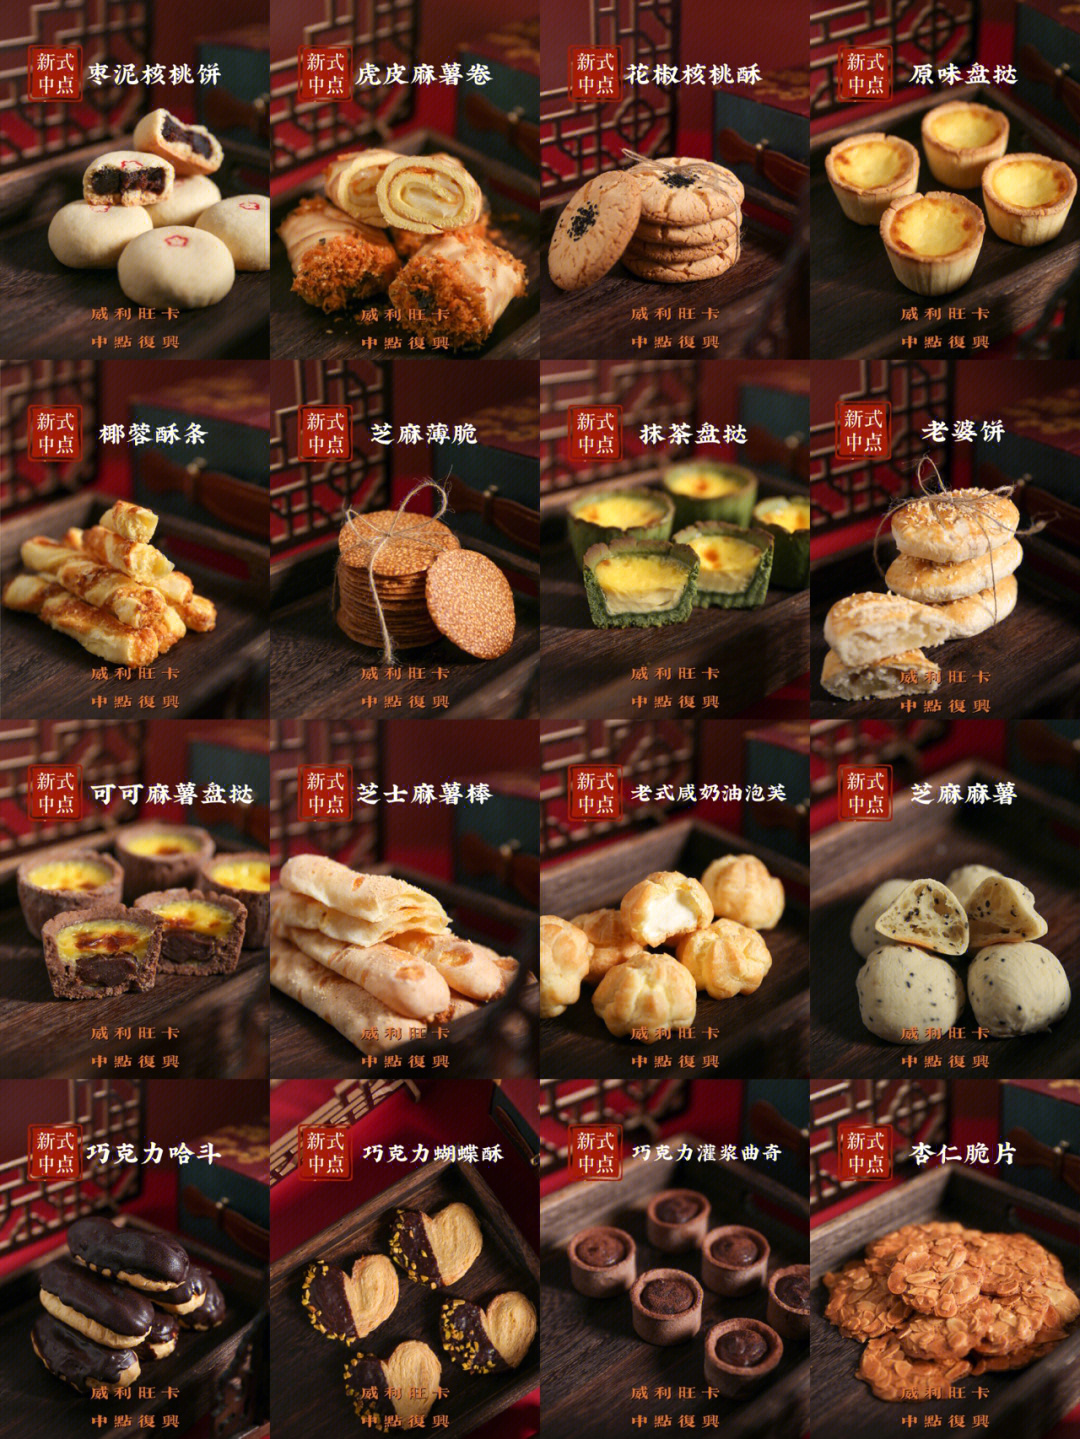 中式糕点_哪里可以学做中式糕点?_郑州有学做桂花糕等中式糕点吗?